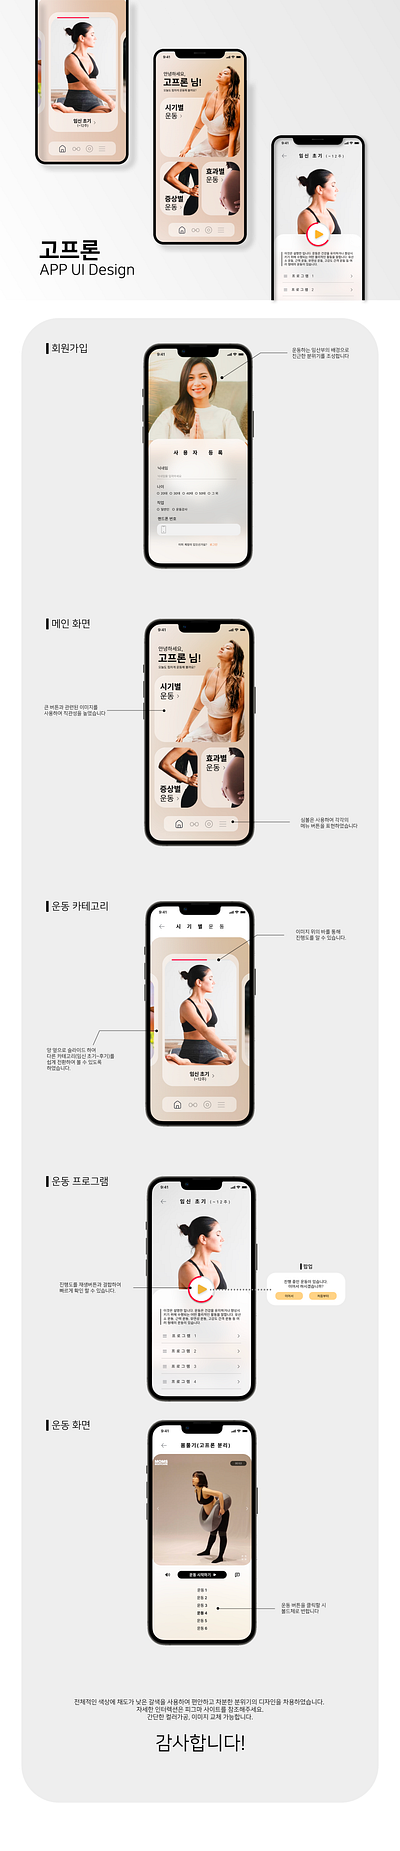 UIUX design - exercise app for pregnant women app app design exercise graphic design product design ui uiux uiux design women